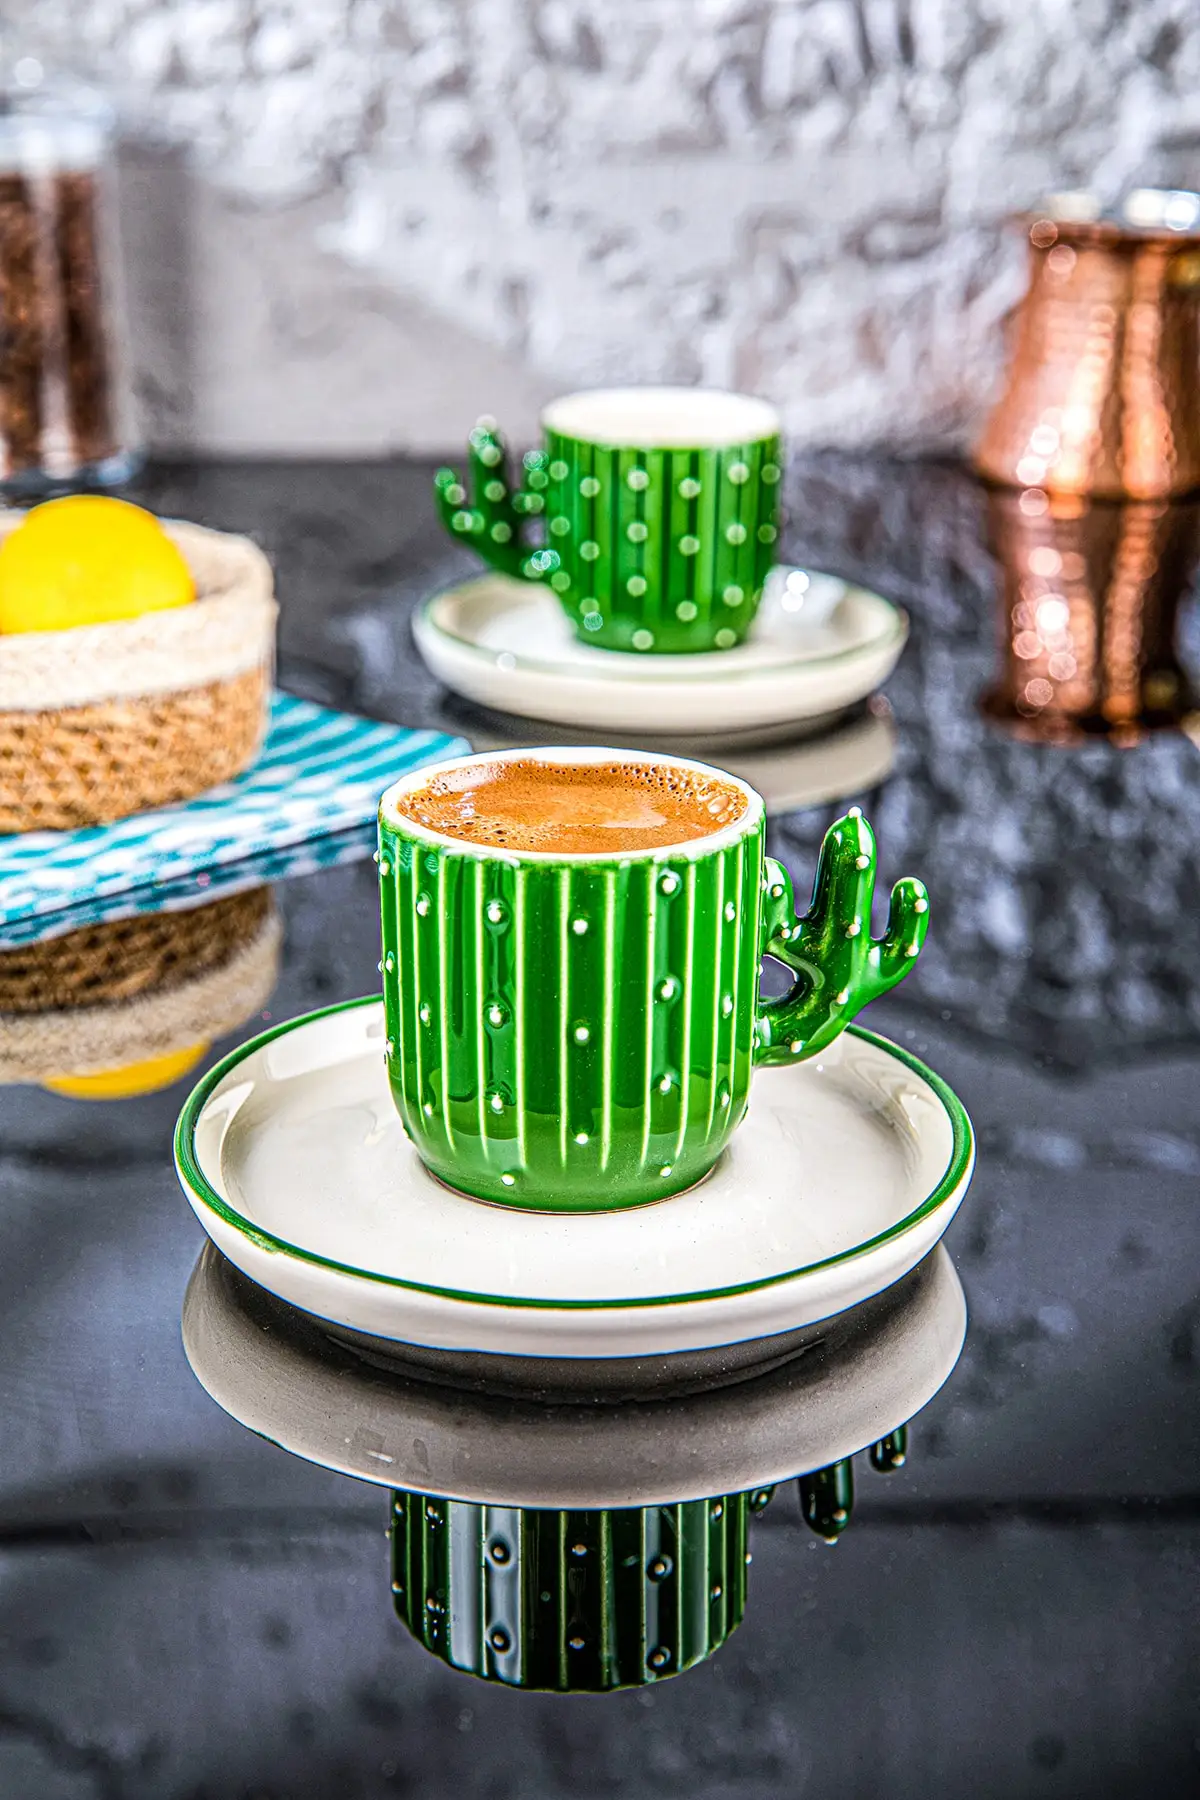 

Opuntia кактус ручной работы 110 мл турецкий кофе, чашка эспрессо зеленая 2 шт., Hediyelik 2 Li Cup❤️Sarı розовый синий фарфор